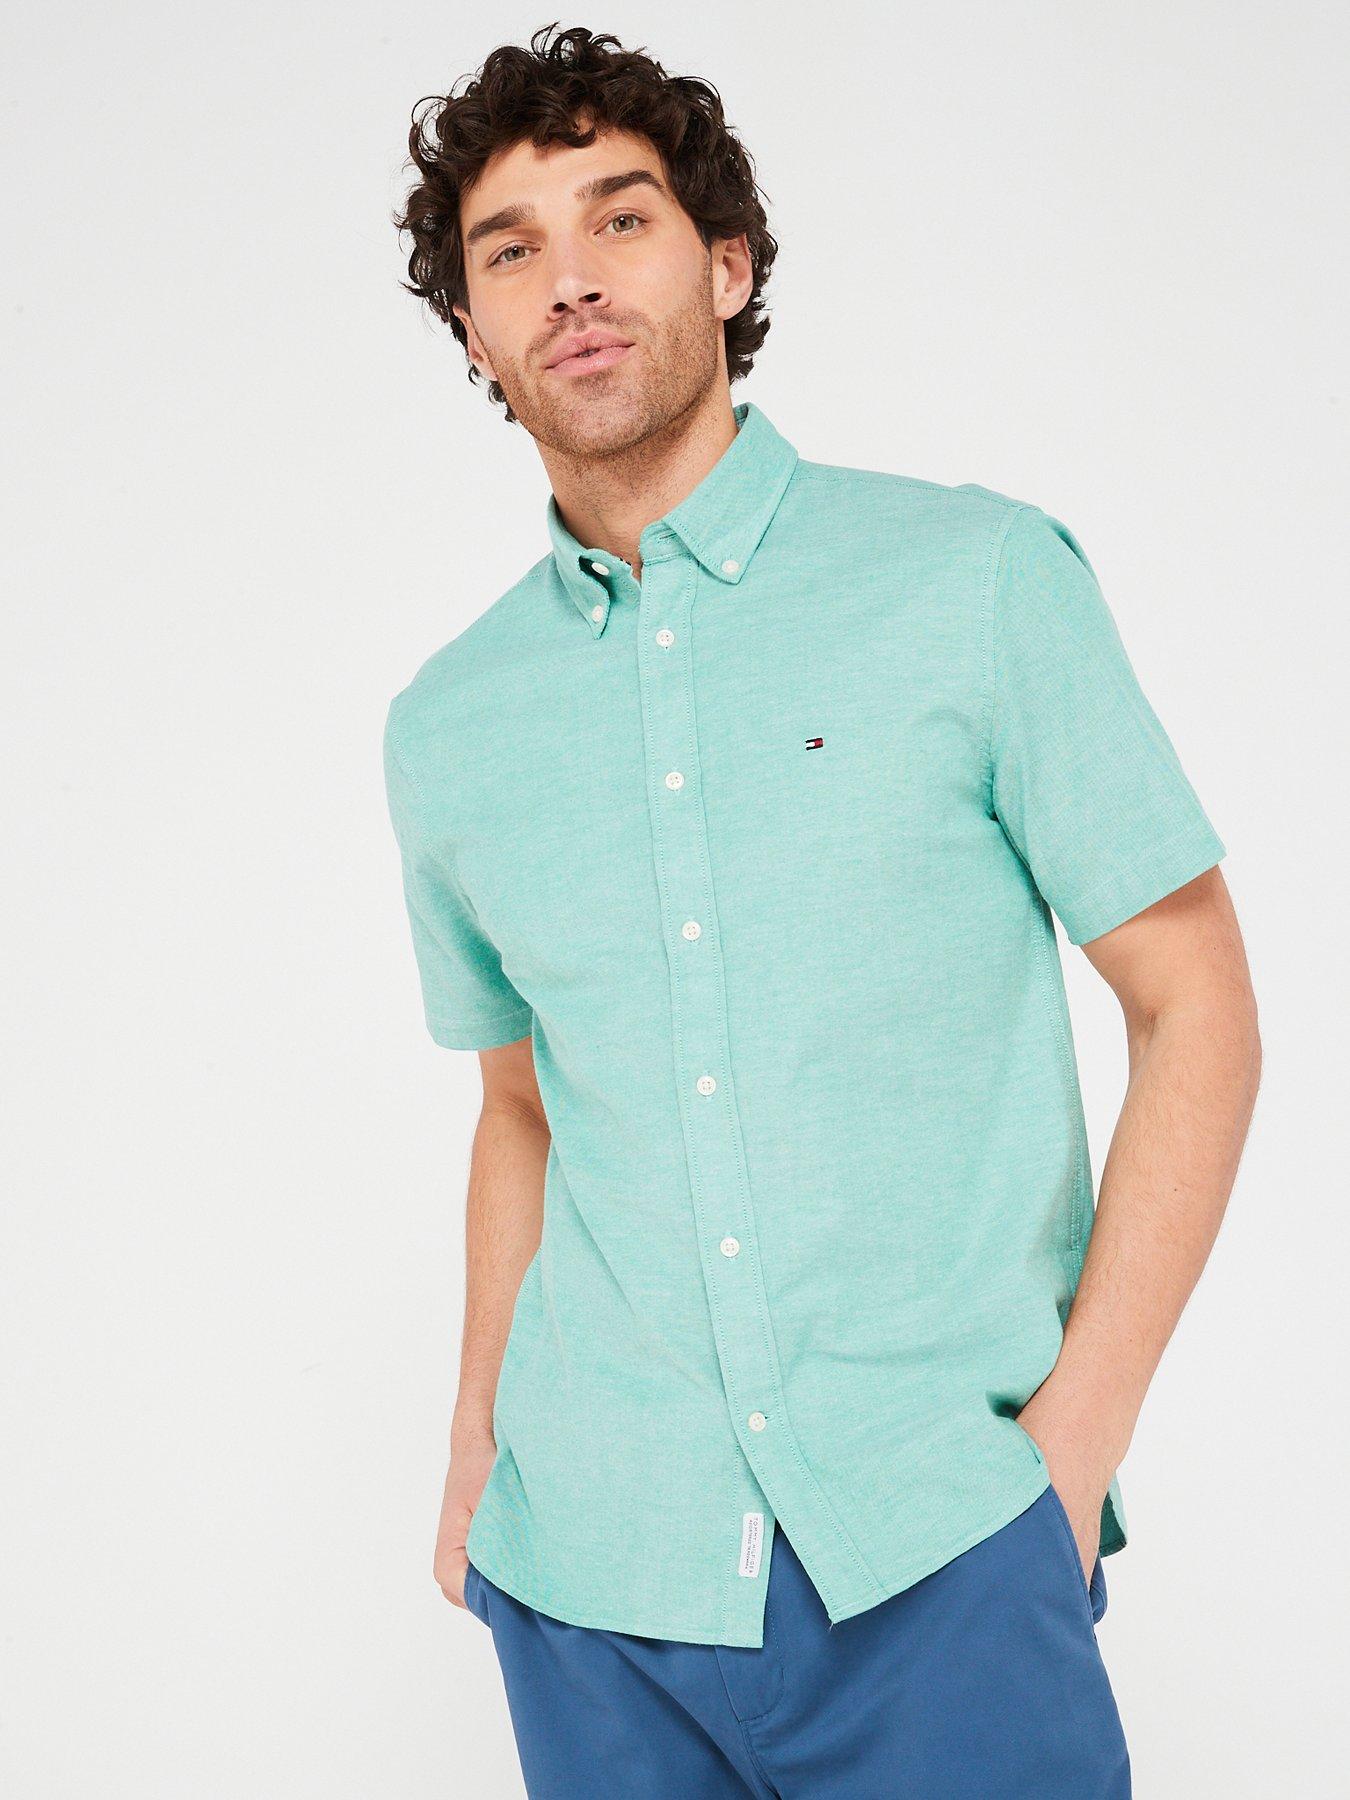 Tommy Hilfiger Men’s 2-Pack Regular Fit Dress Shirt, Choose Color / Size,  NEW